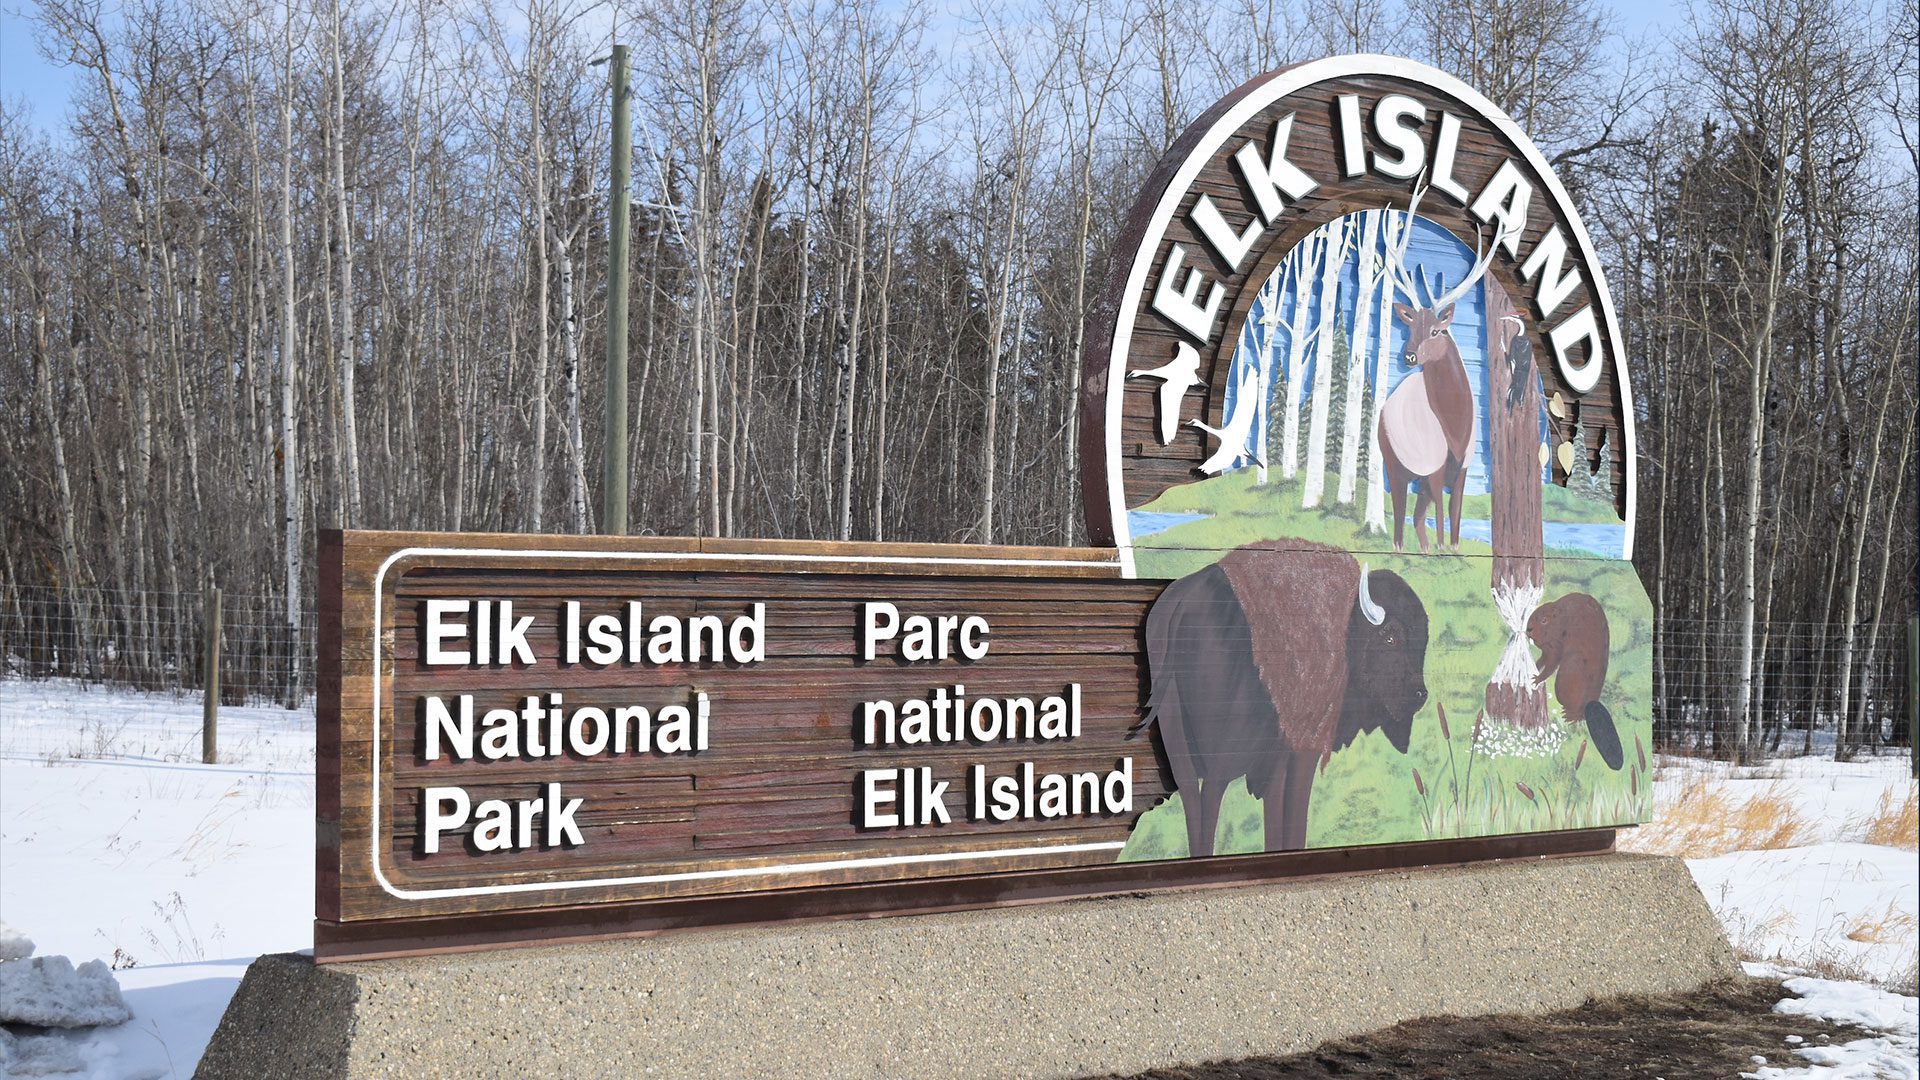 Elk island national park